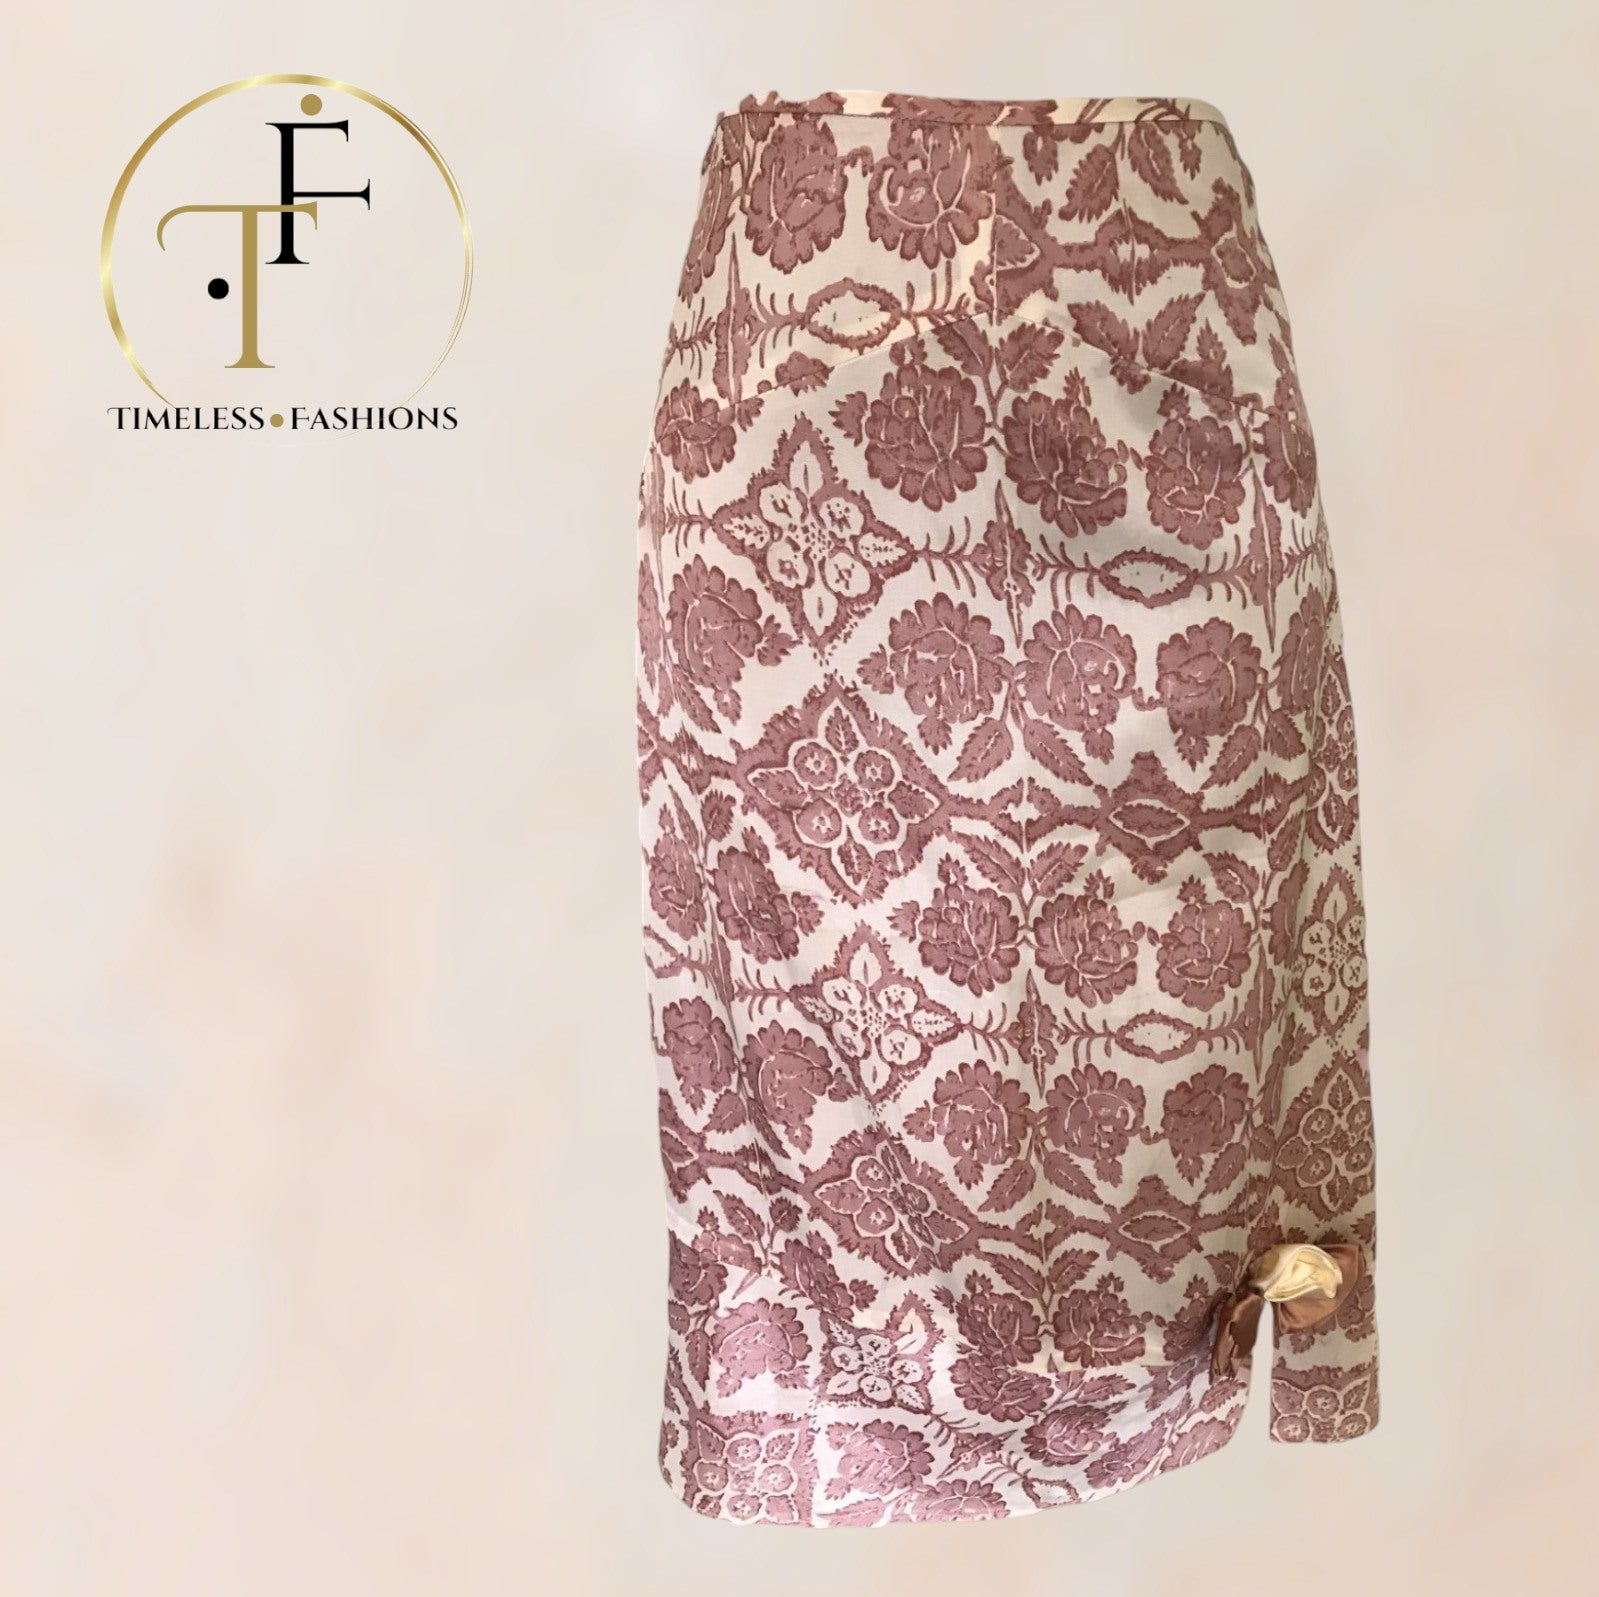 Day Birger et Mikkelsen Dusky Pink & Cream Silky Floral Skirt UK 10 US 6 EU 38 Timeless Fashions